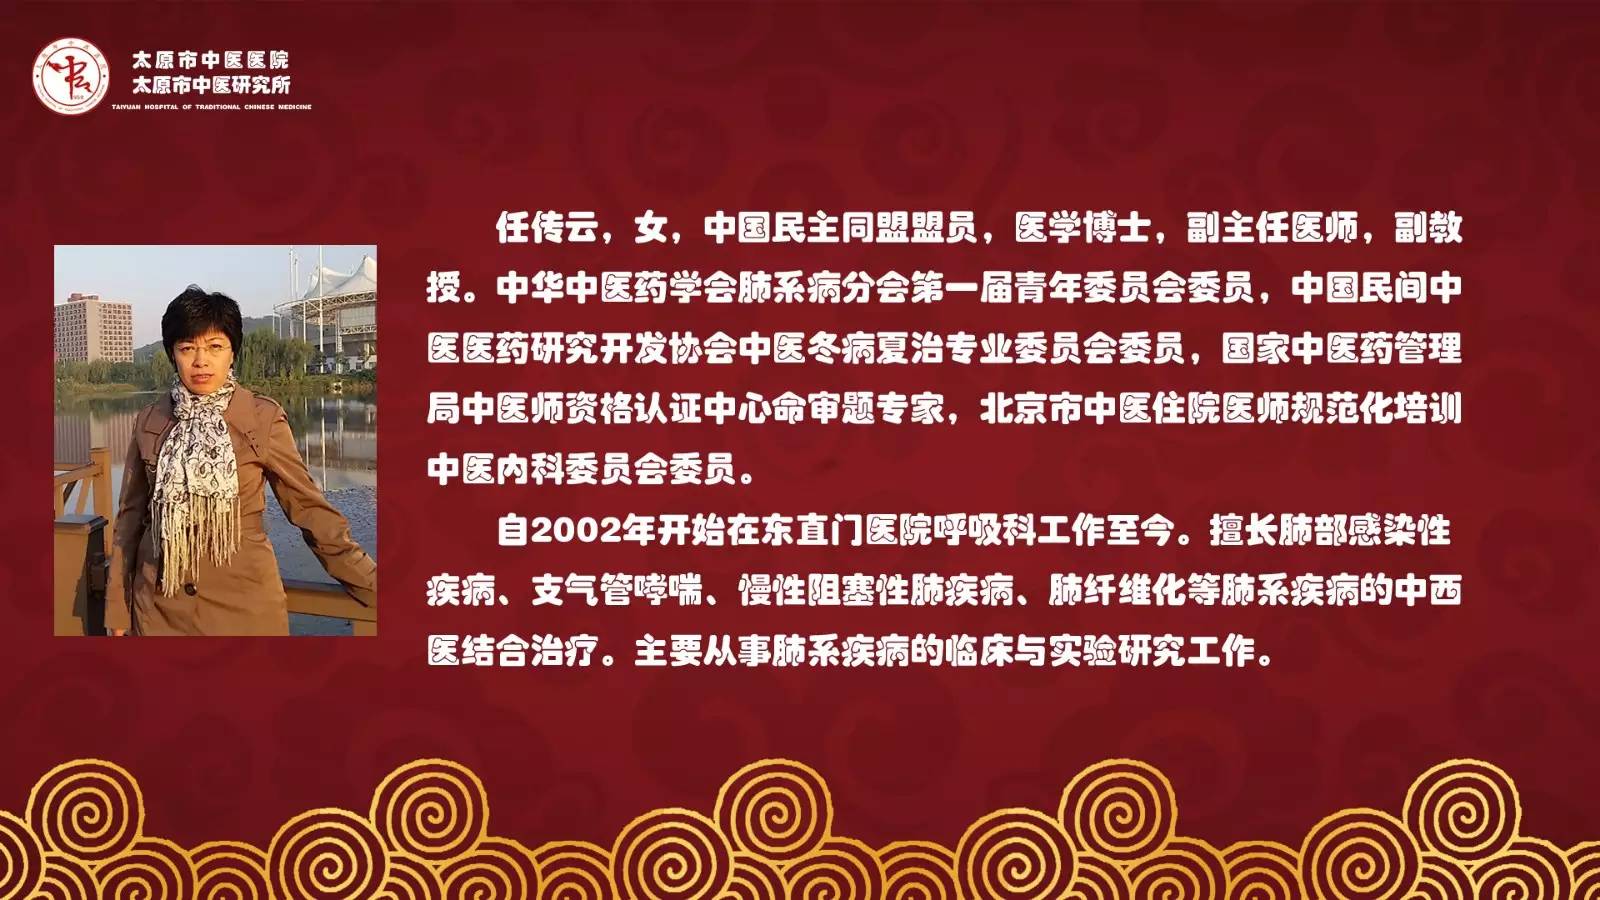 包含北京中医药大学东方医院代帮挂号，保证为客户私人信息保密的词条